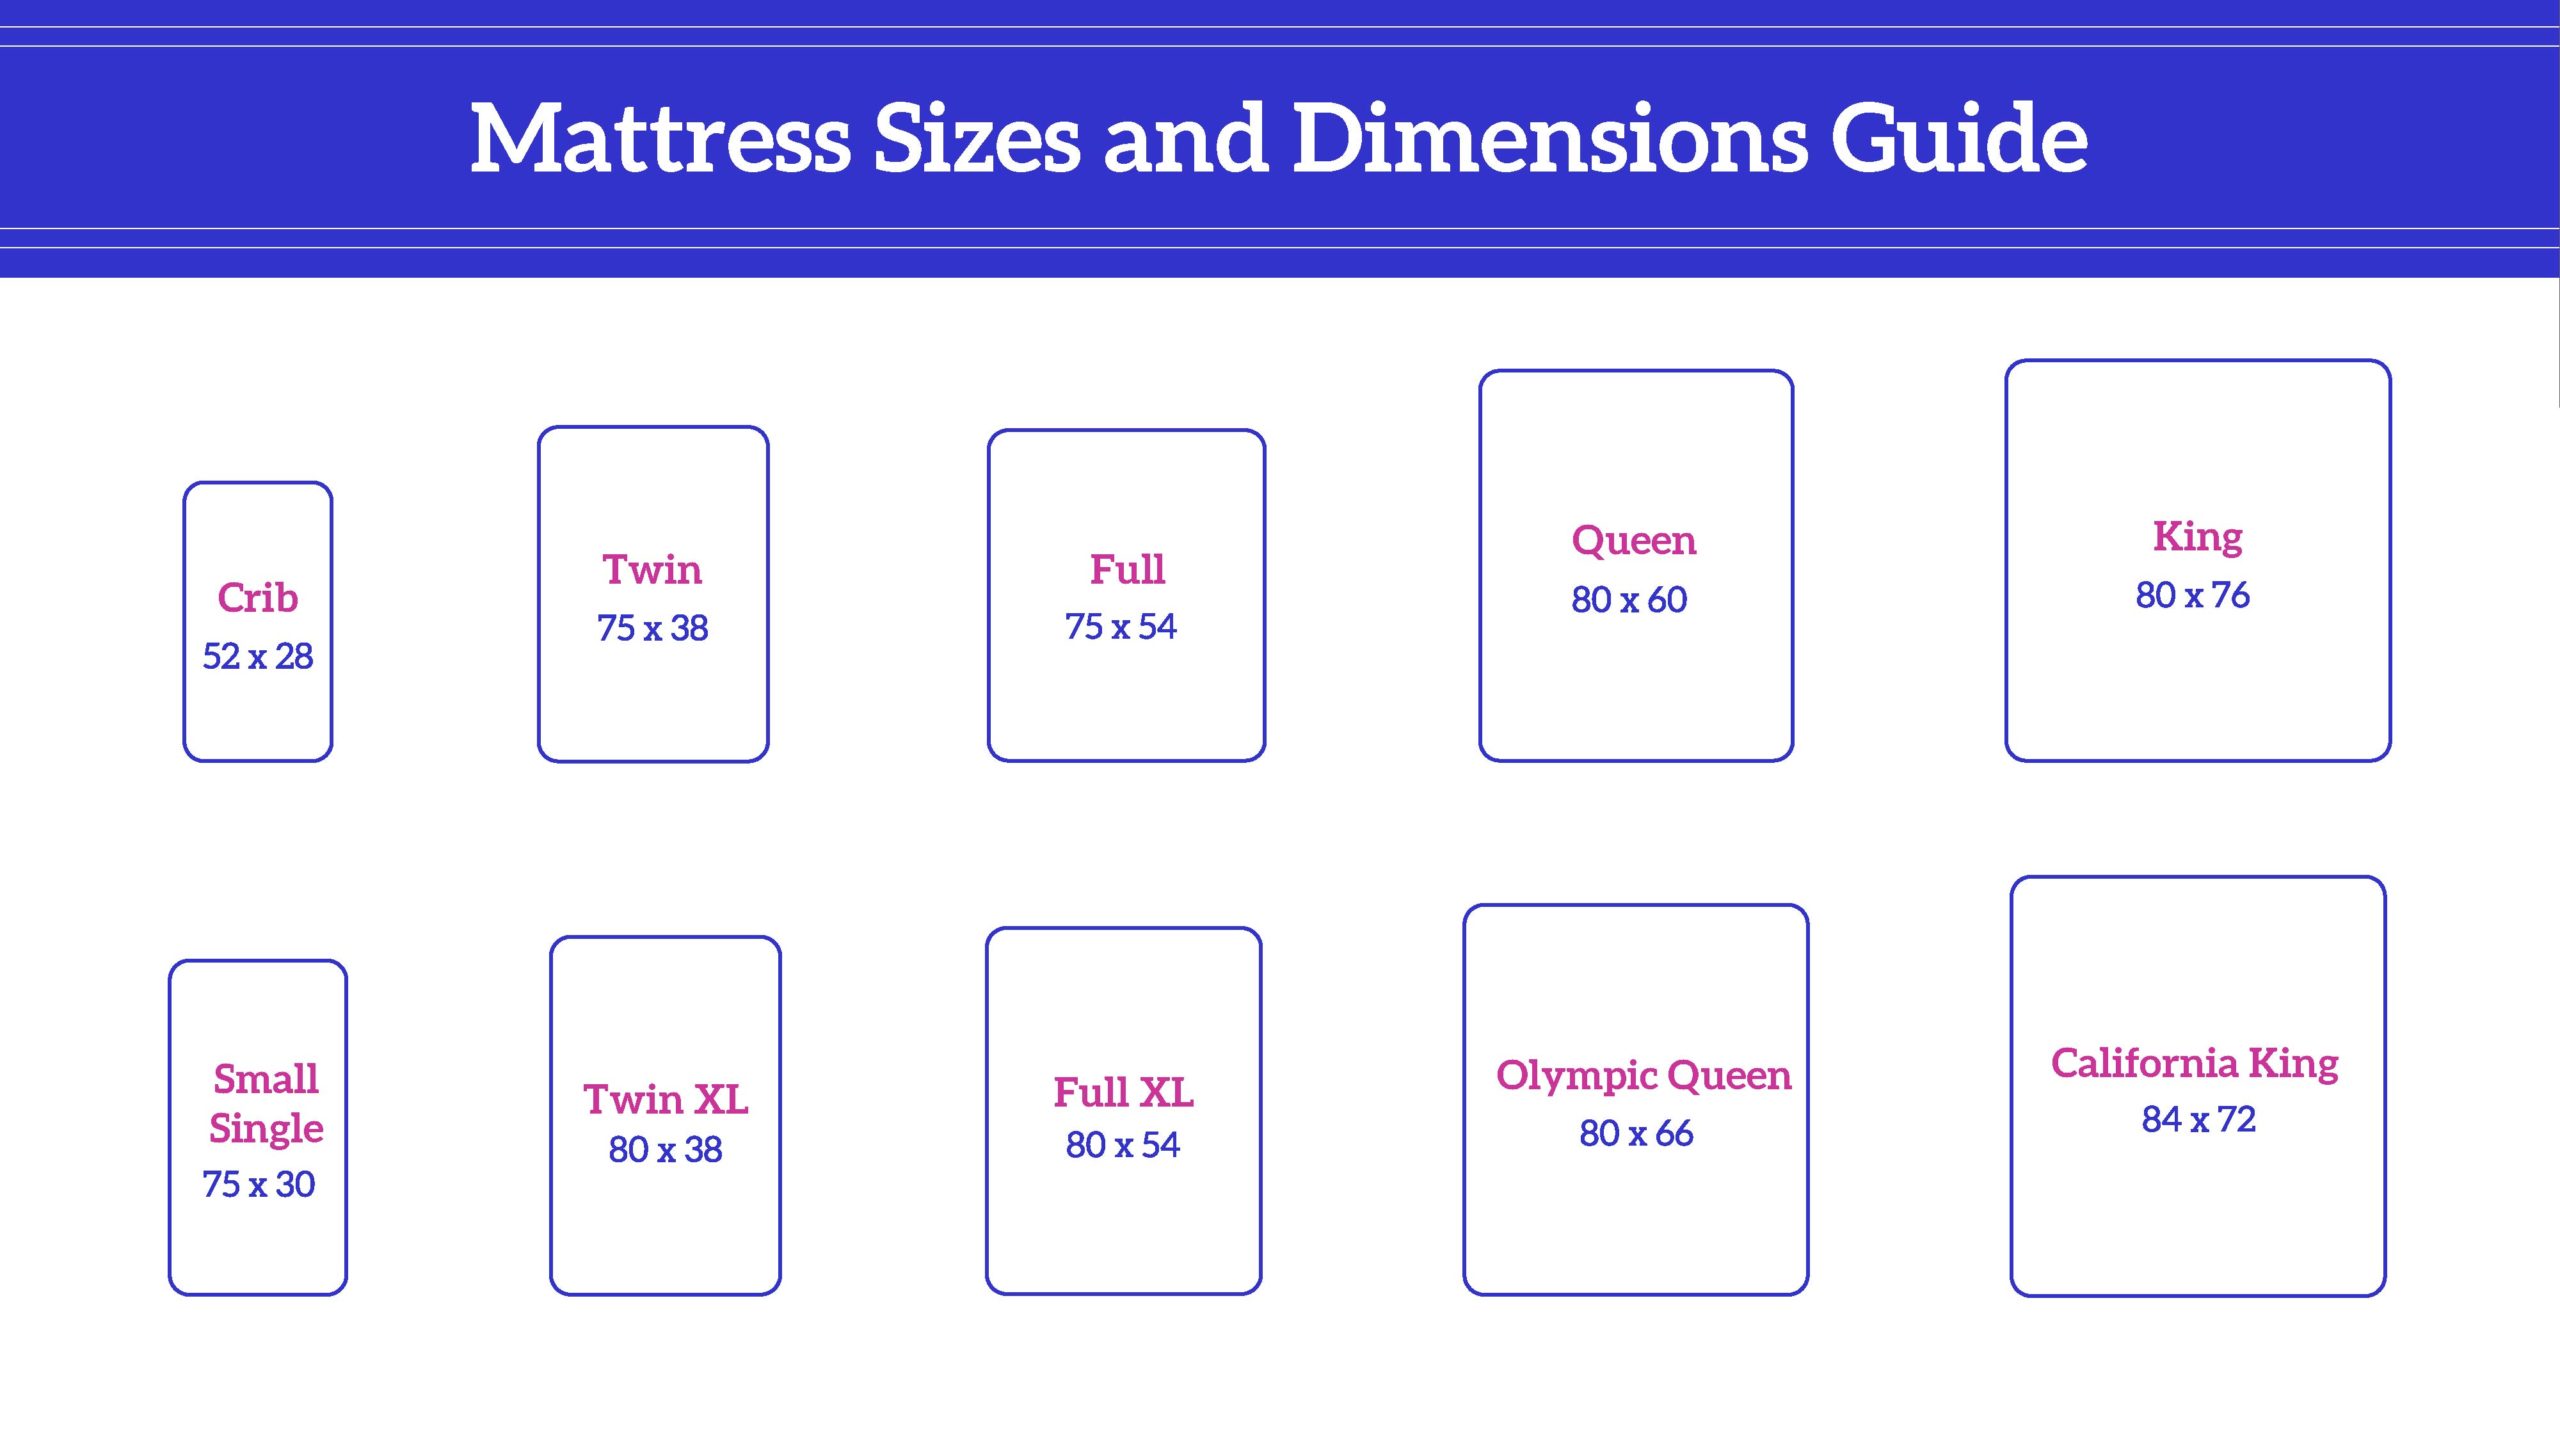 Standard Queen Mattress Size